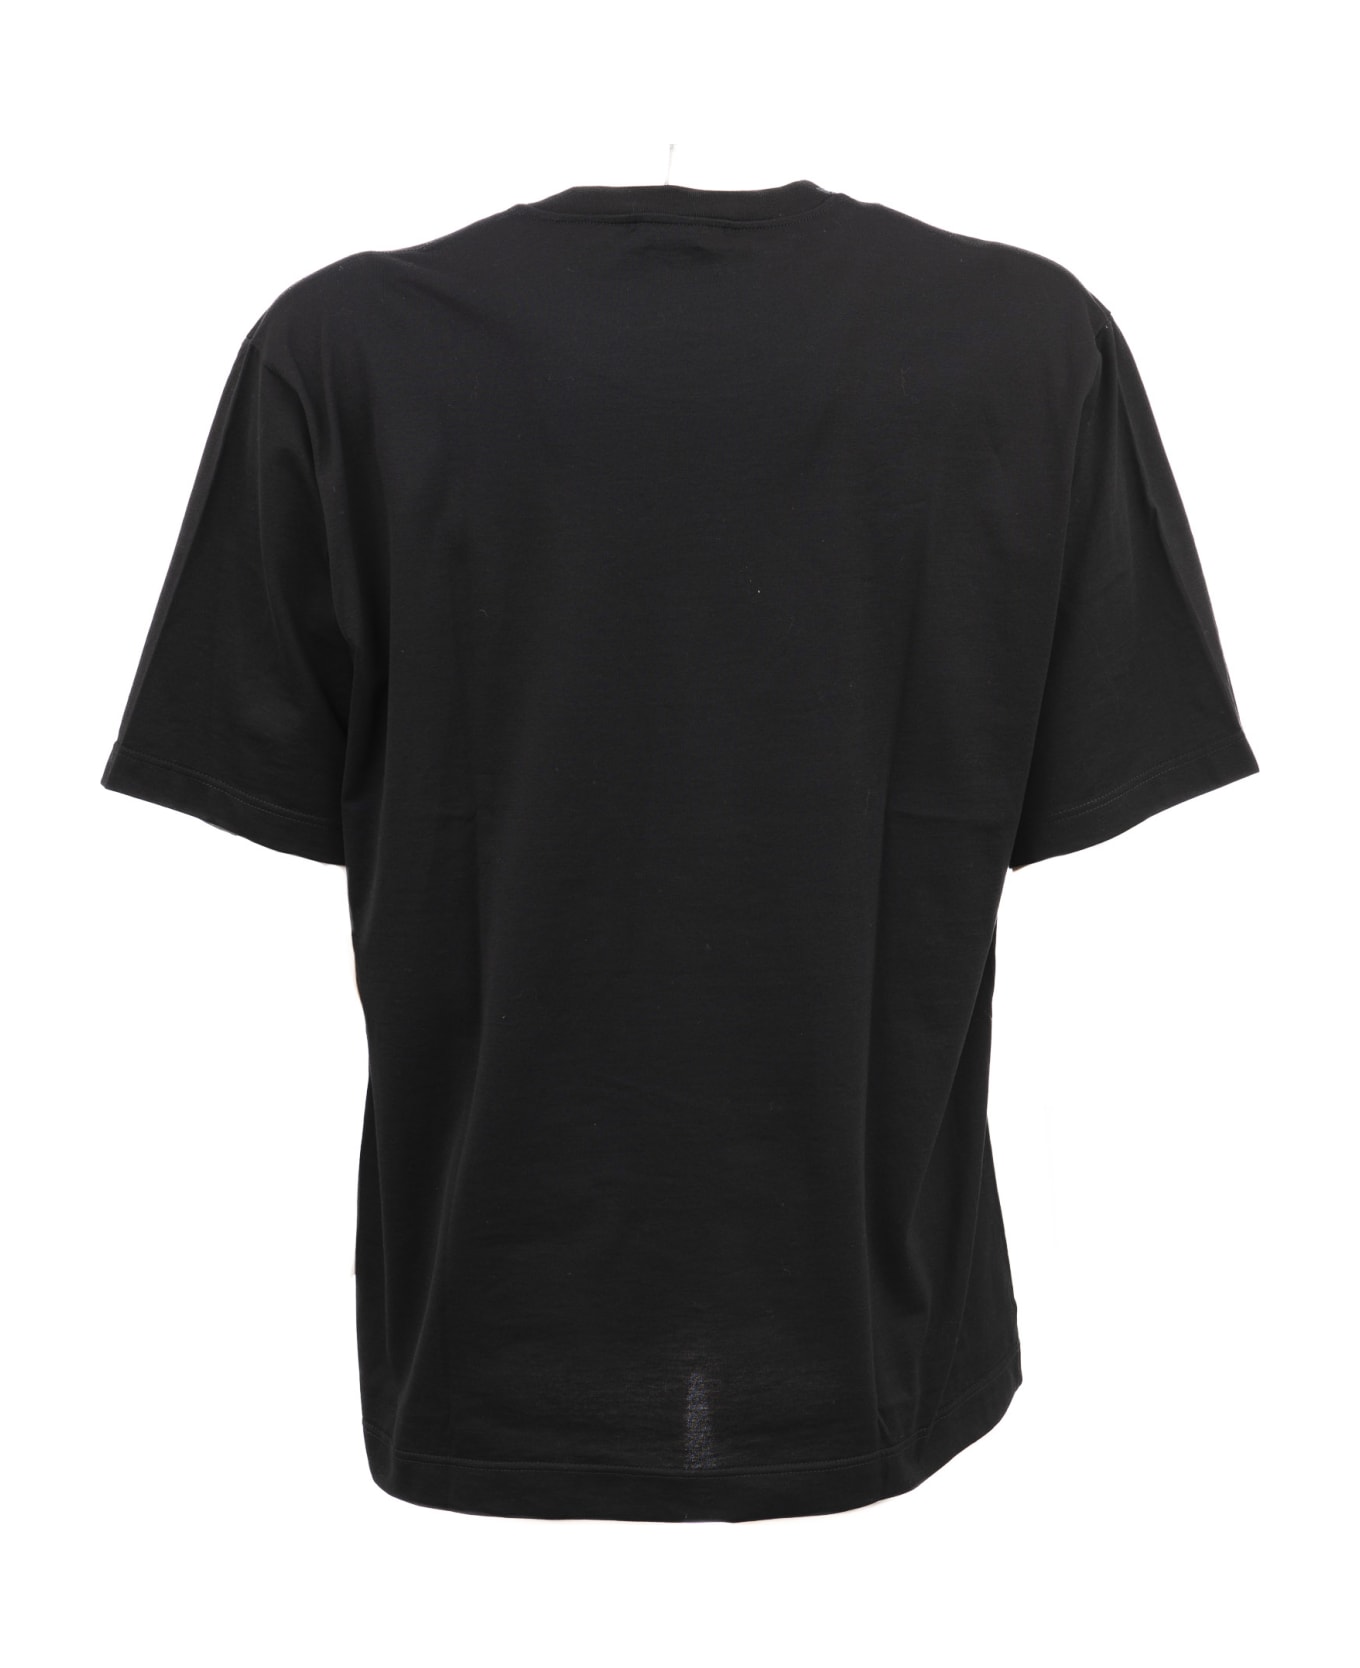 Dolce & Gabbana Round Neck T-Shirt - Black